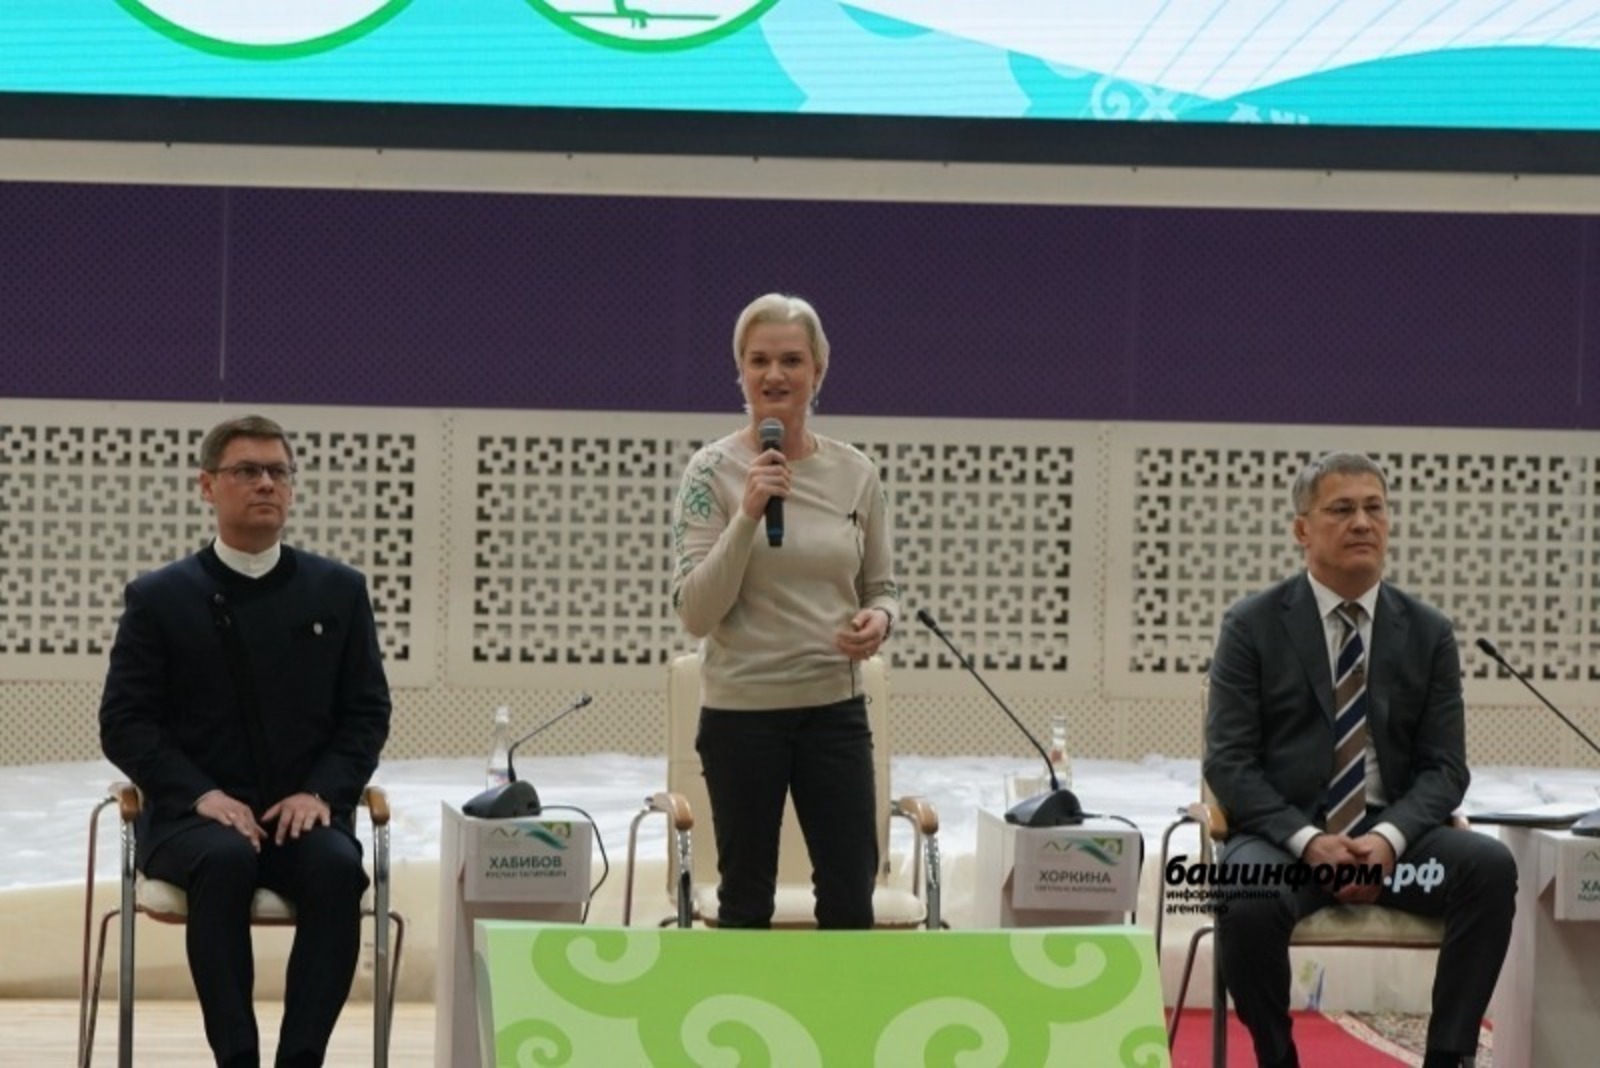 Светлана Хоркина посетила стенд Башкортостана на Петербургском экономическом форуме и высказала слова поддержки юным спортсменам